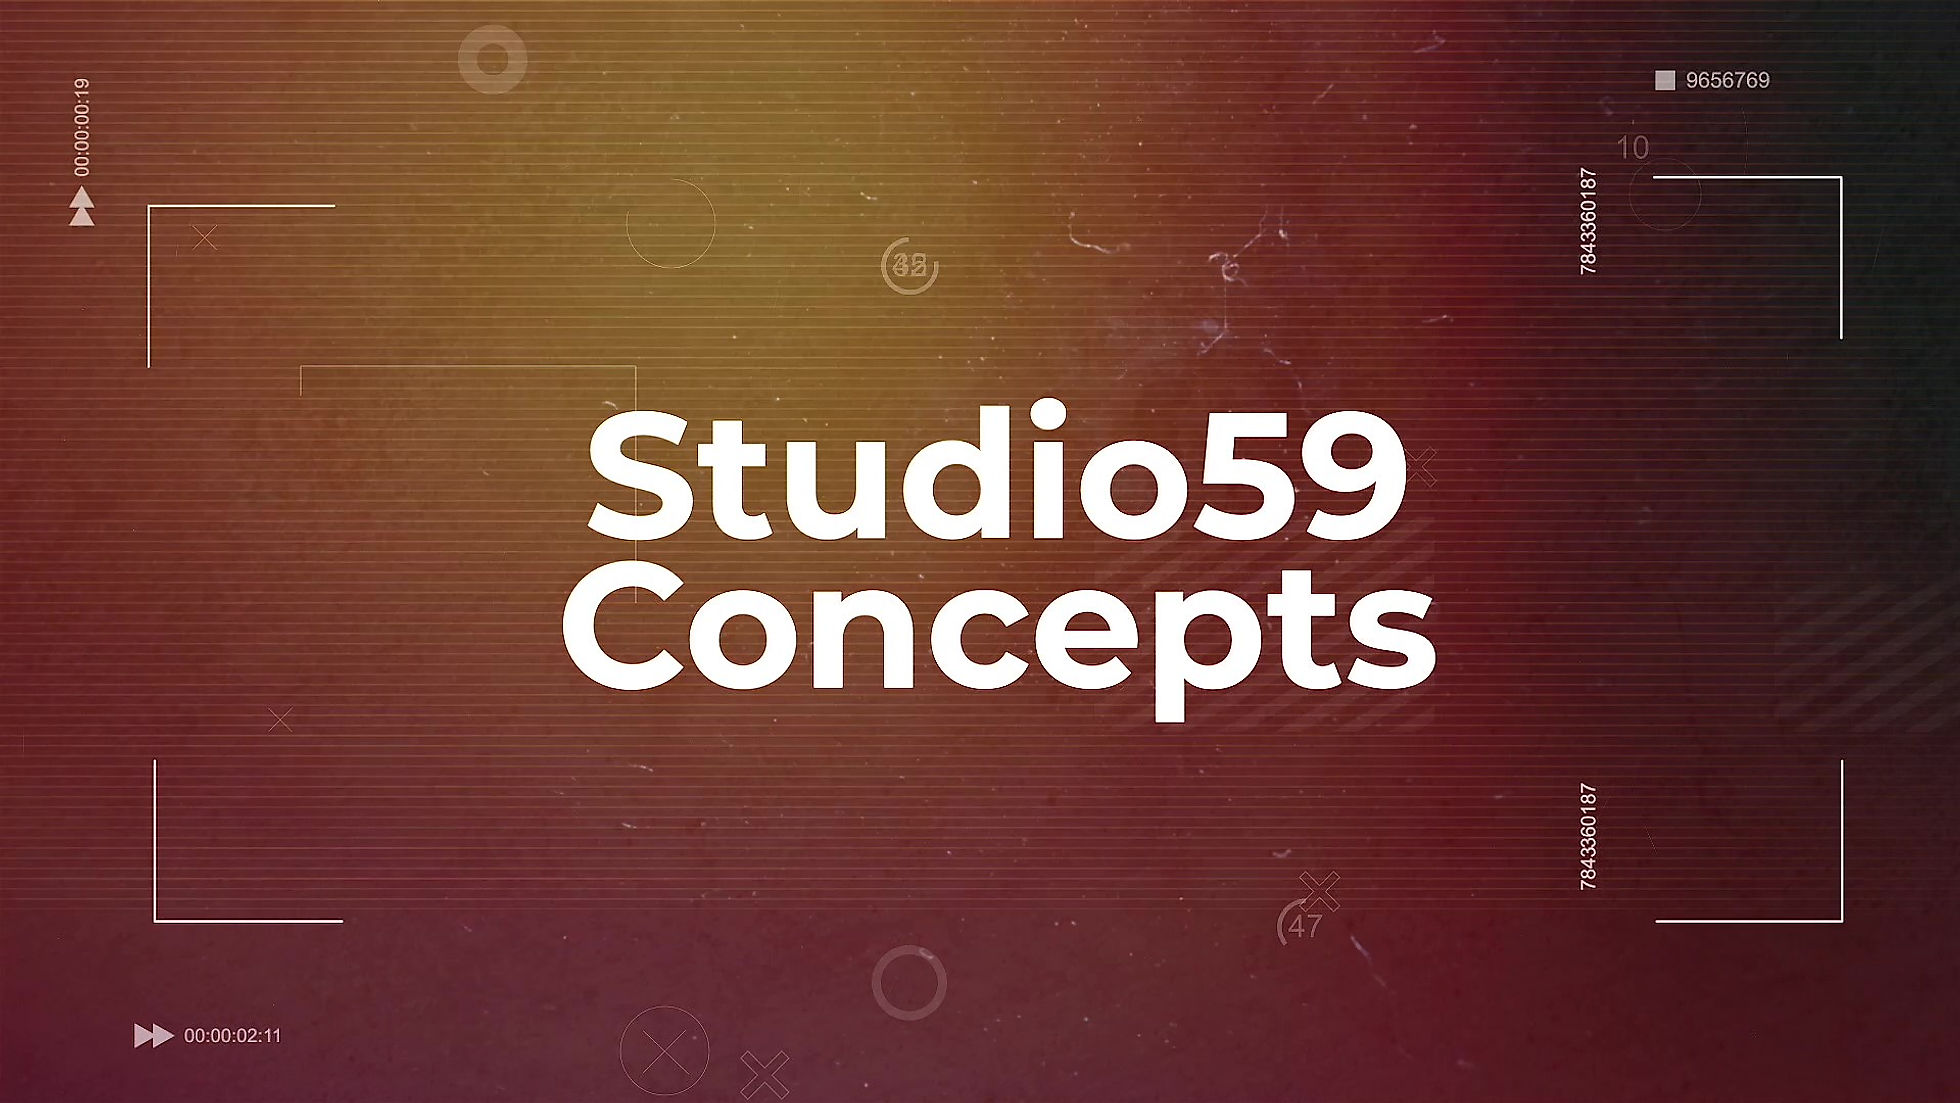 Studio59 Concepts Showreel 2023